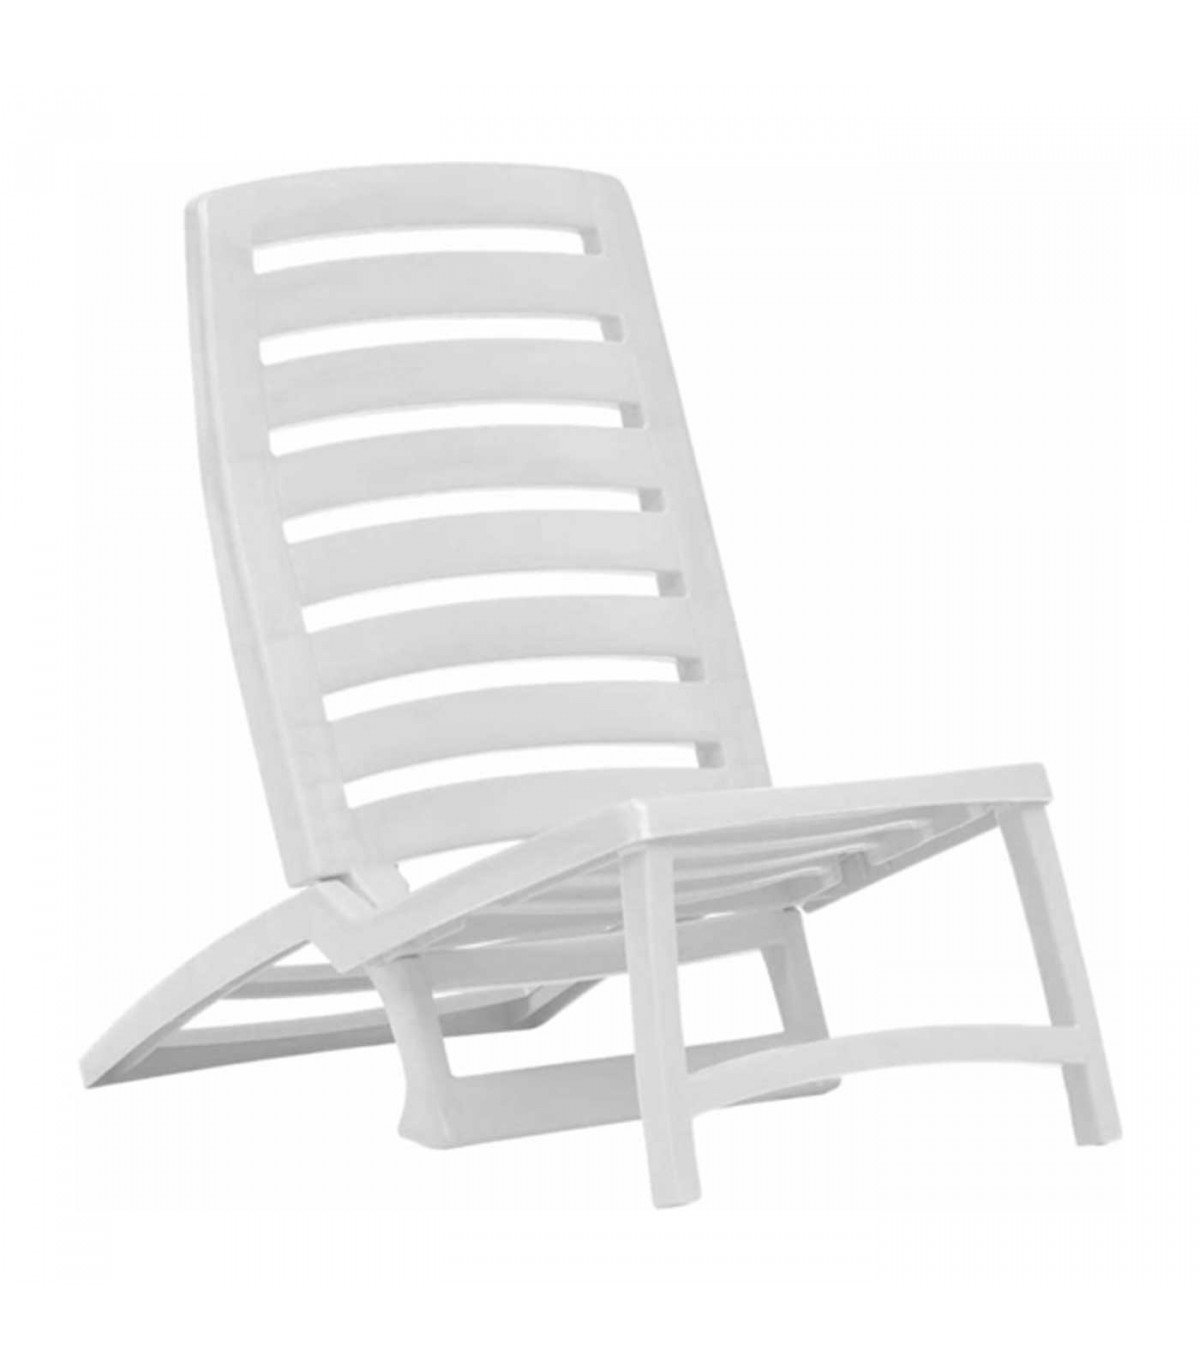 Tradineur - Silla de playa plegable, estructura metálica blanca y asiento  de tela, ligera y resistente, máx. 110 kg, jardín, pes